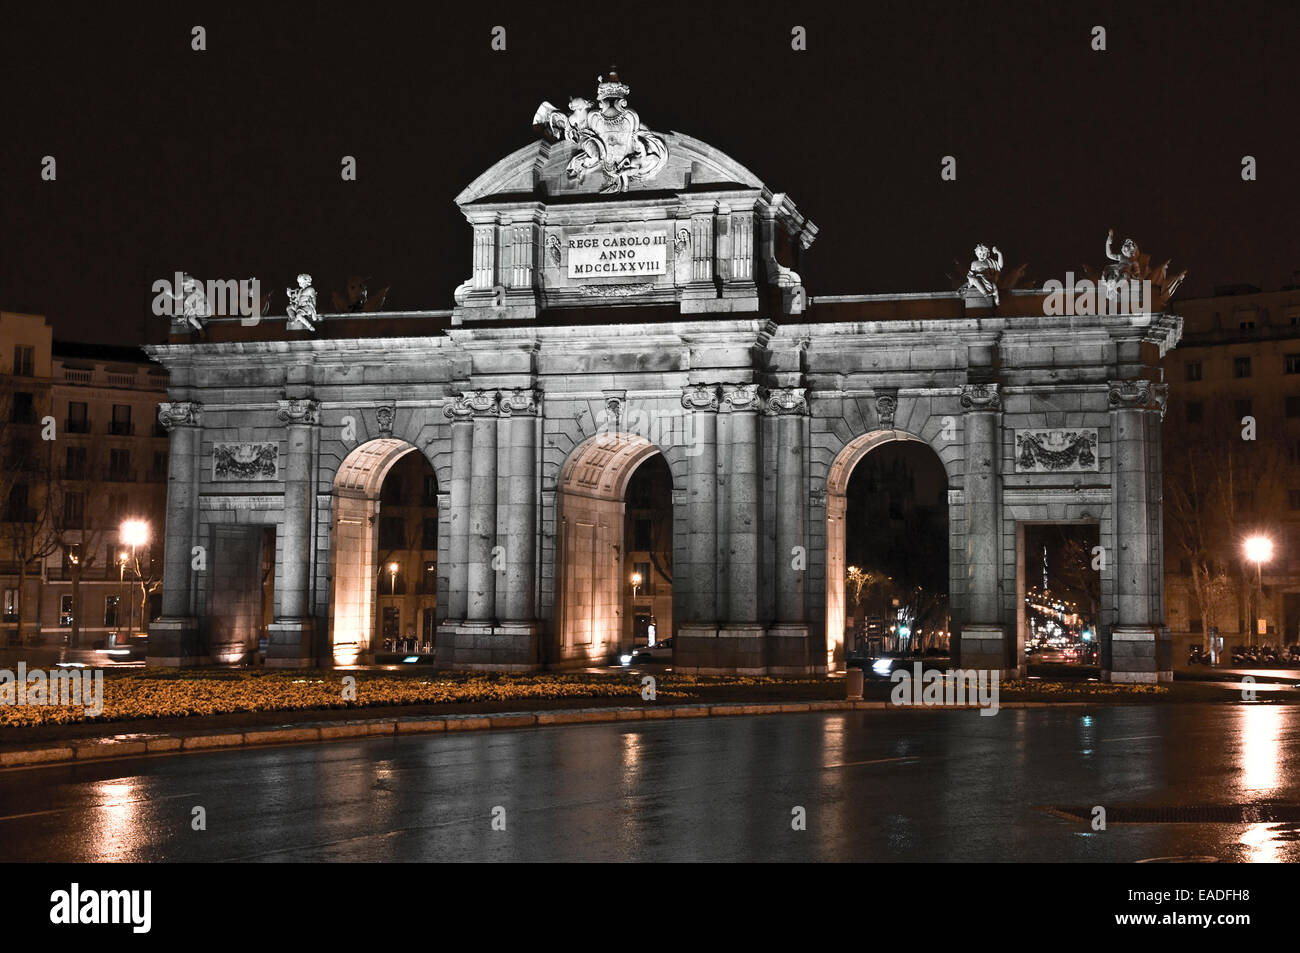 Puerta de Alcalá. Escena nocturna de monumento madrileño en una jornada lluviosa. Stock Photo